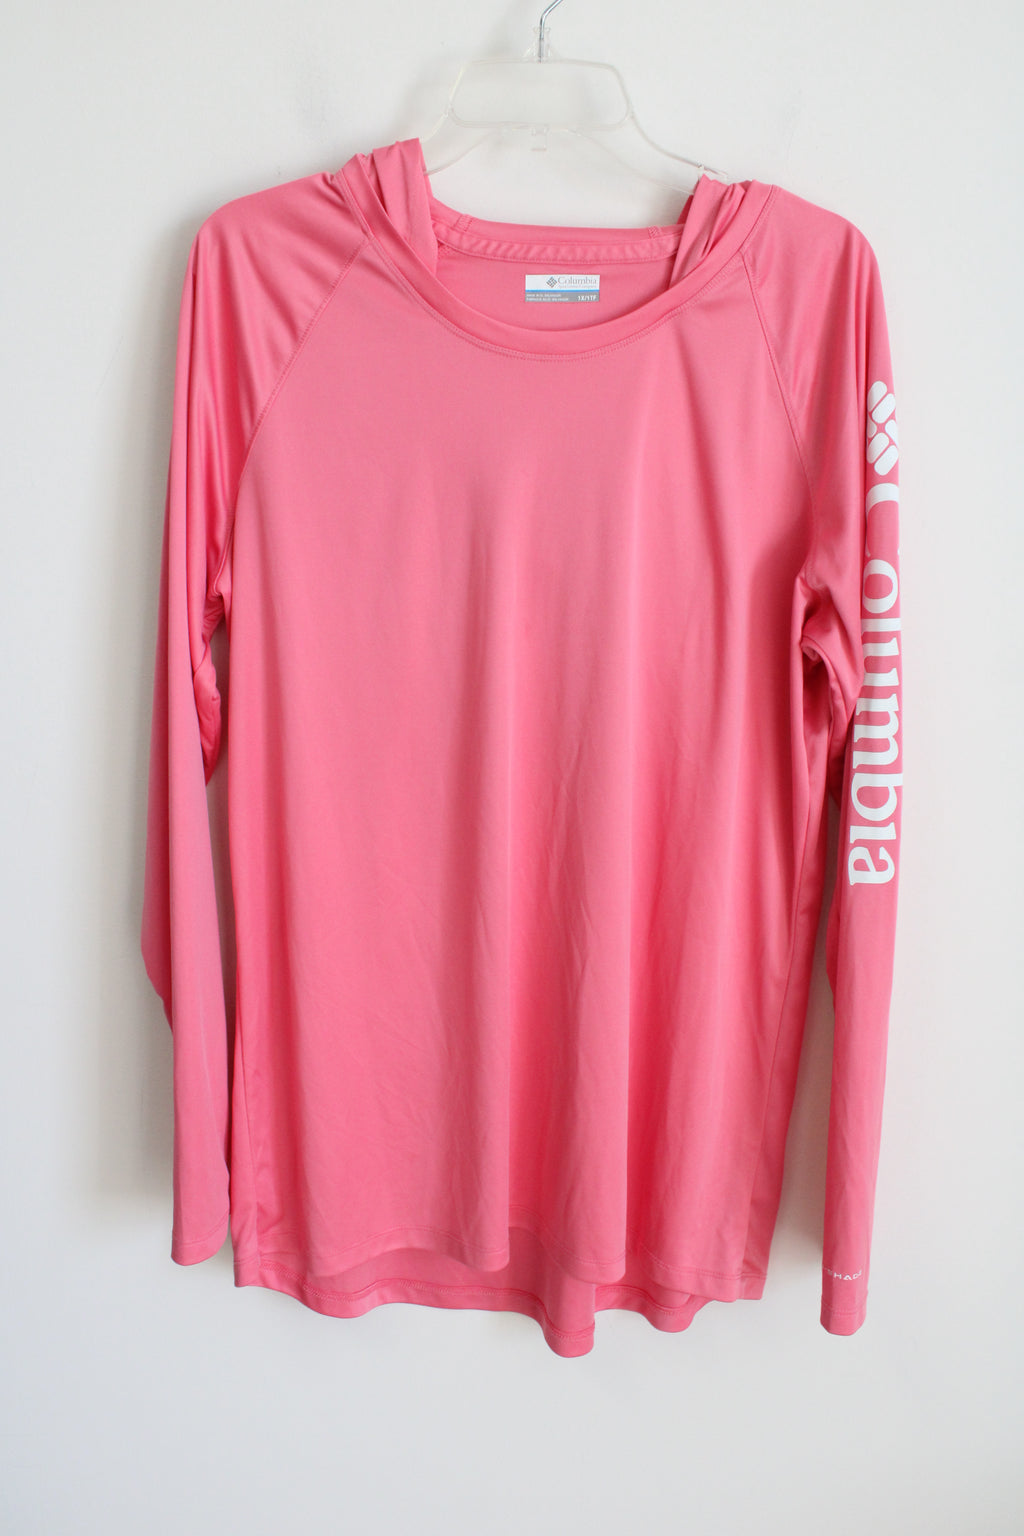 Columbia Sportswear Athletic Pink Hoodie | XL